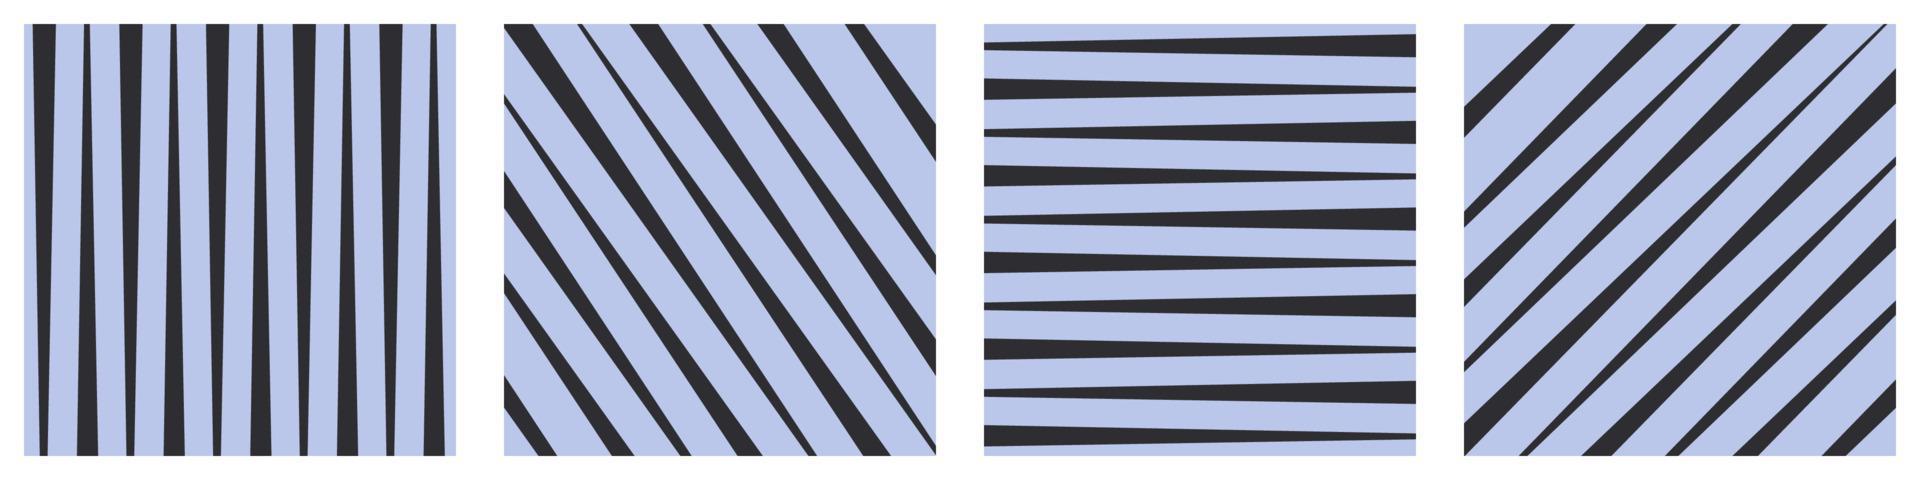 conjunto de sencillo cuadrado patrones desde inestable anchura tiras. horizontal vertical y diagonal líneas antecedentes. minimalista plantillas. vector ilustración.